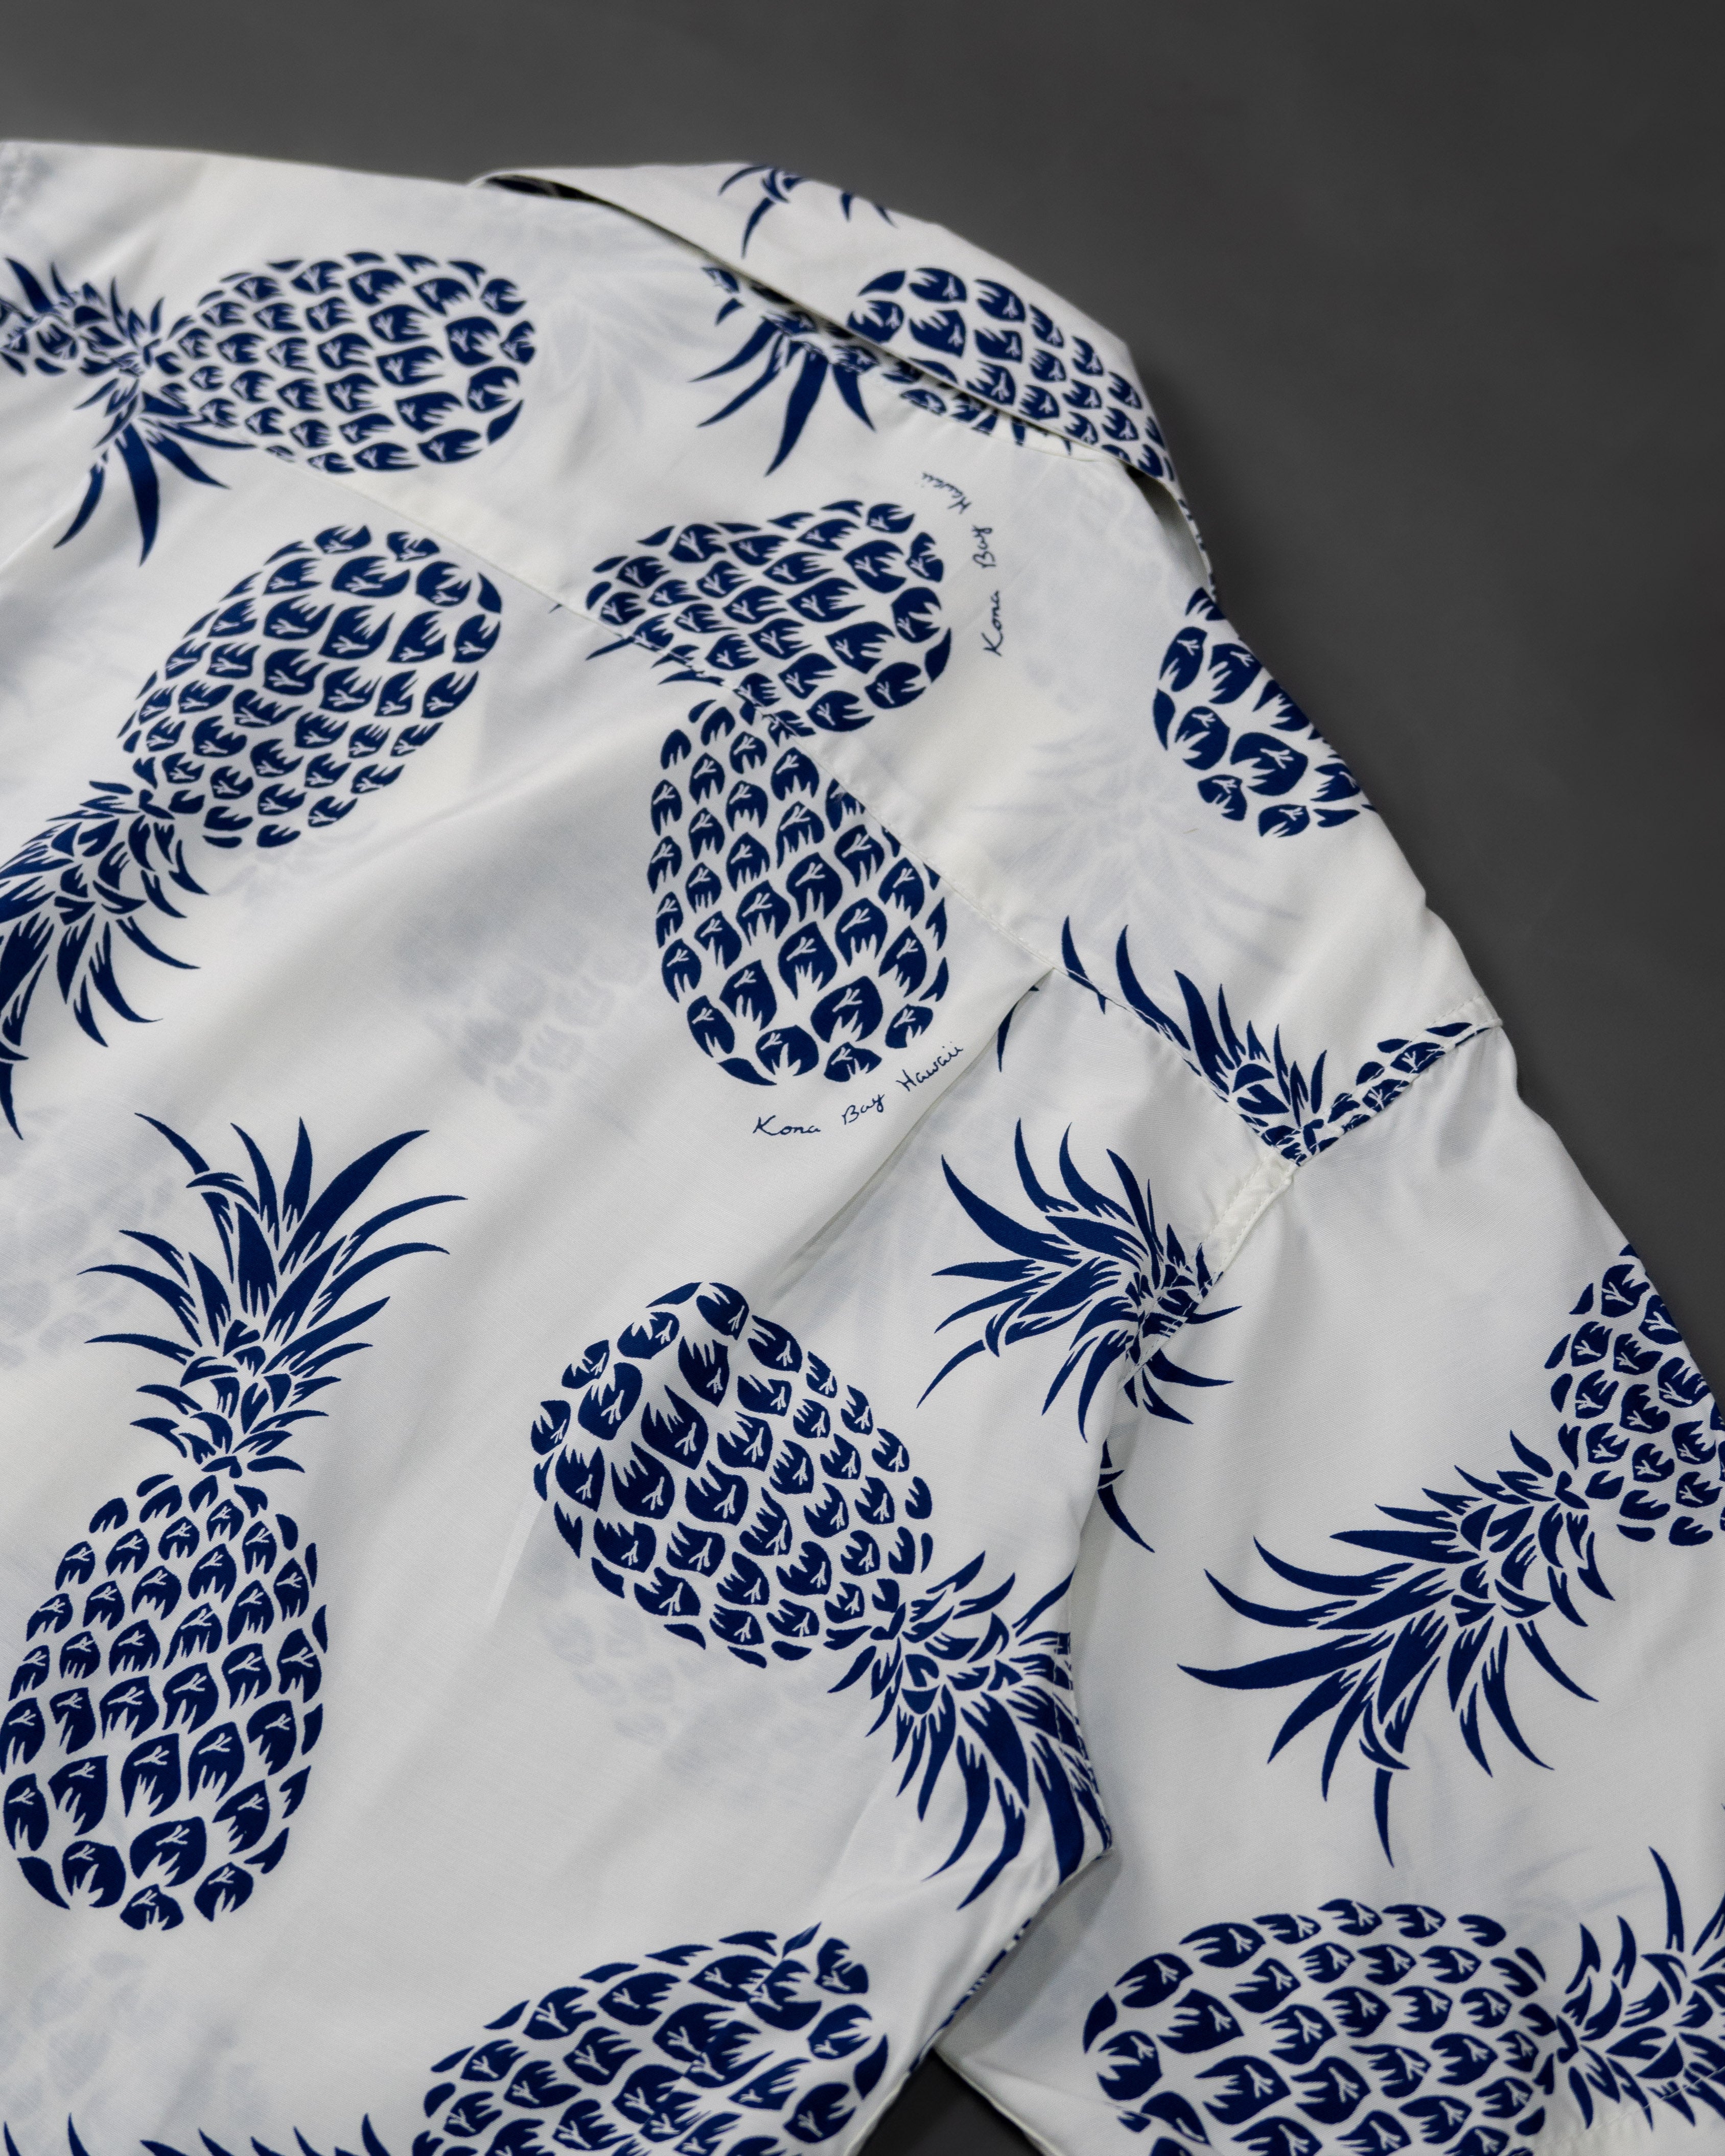 2018 Pineapple | White-Blue